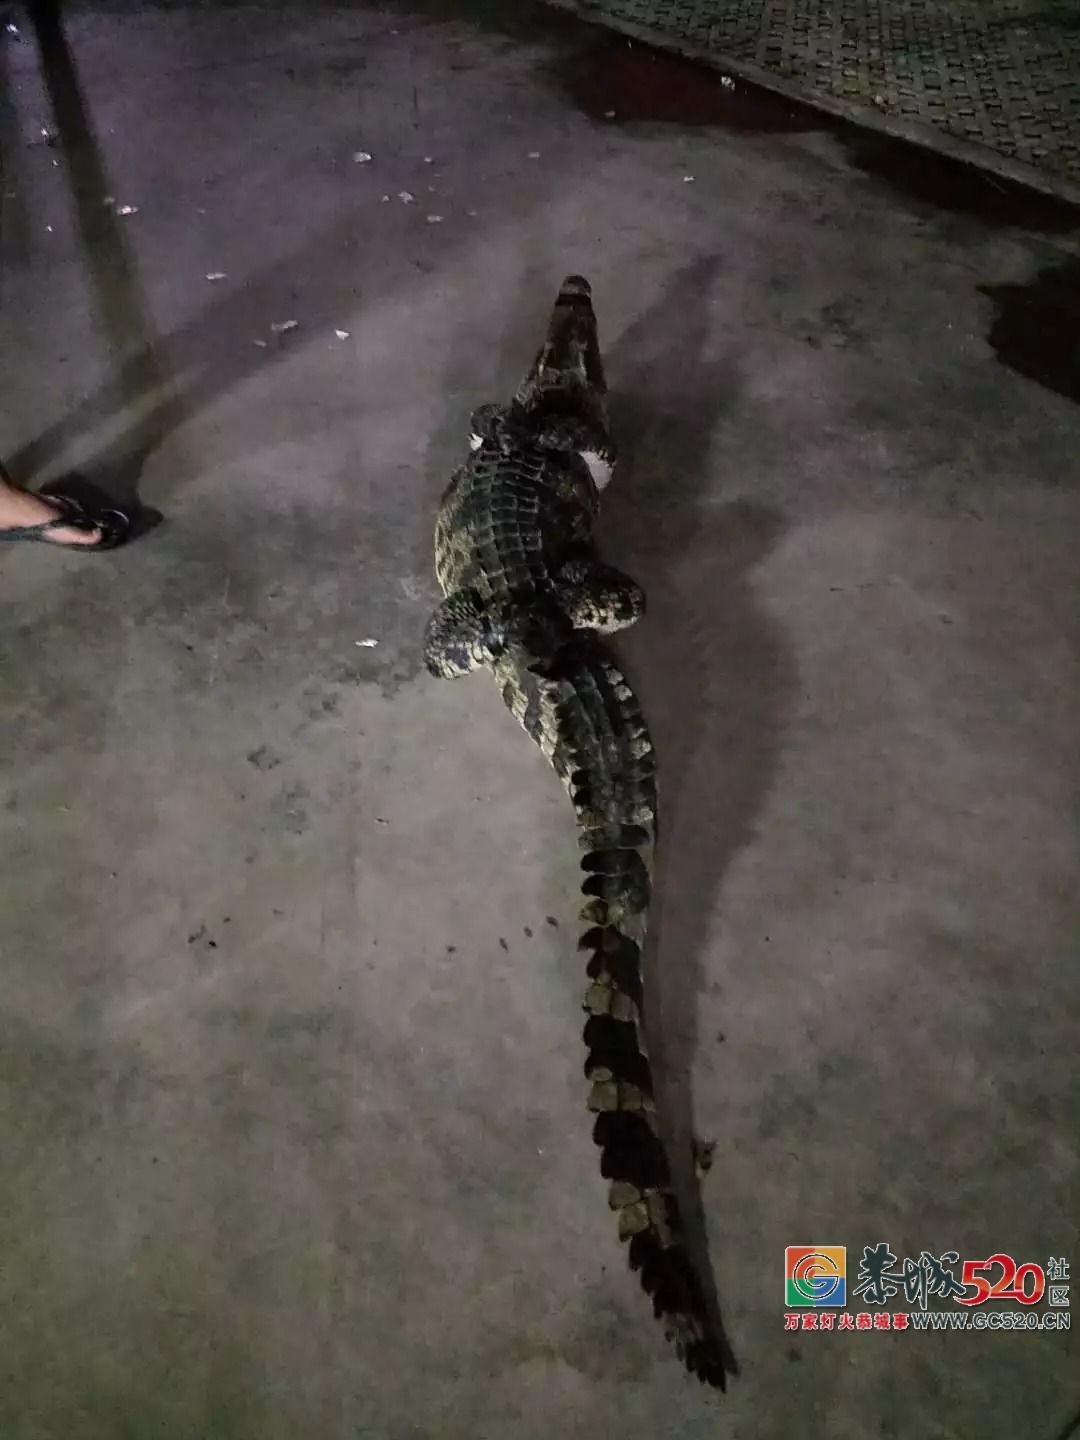 广州流溪河抓到一条2米长的鳄鱼！是真的！不能吃！782 / 作者:狗婆蛇 / 帖子ID:263157